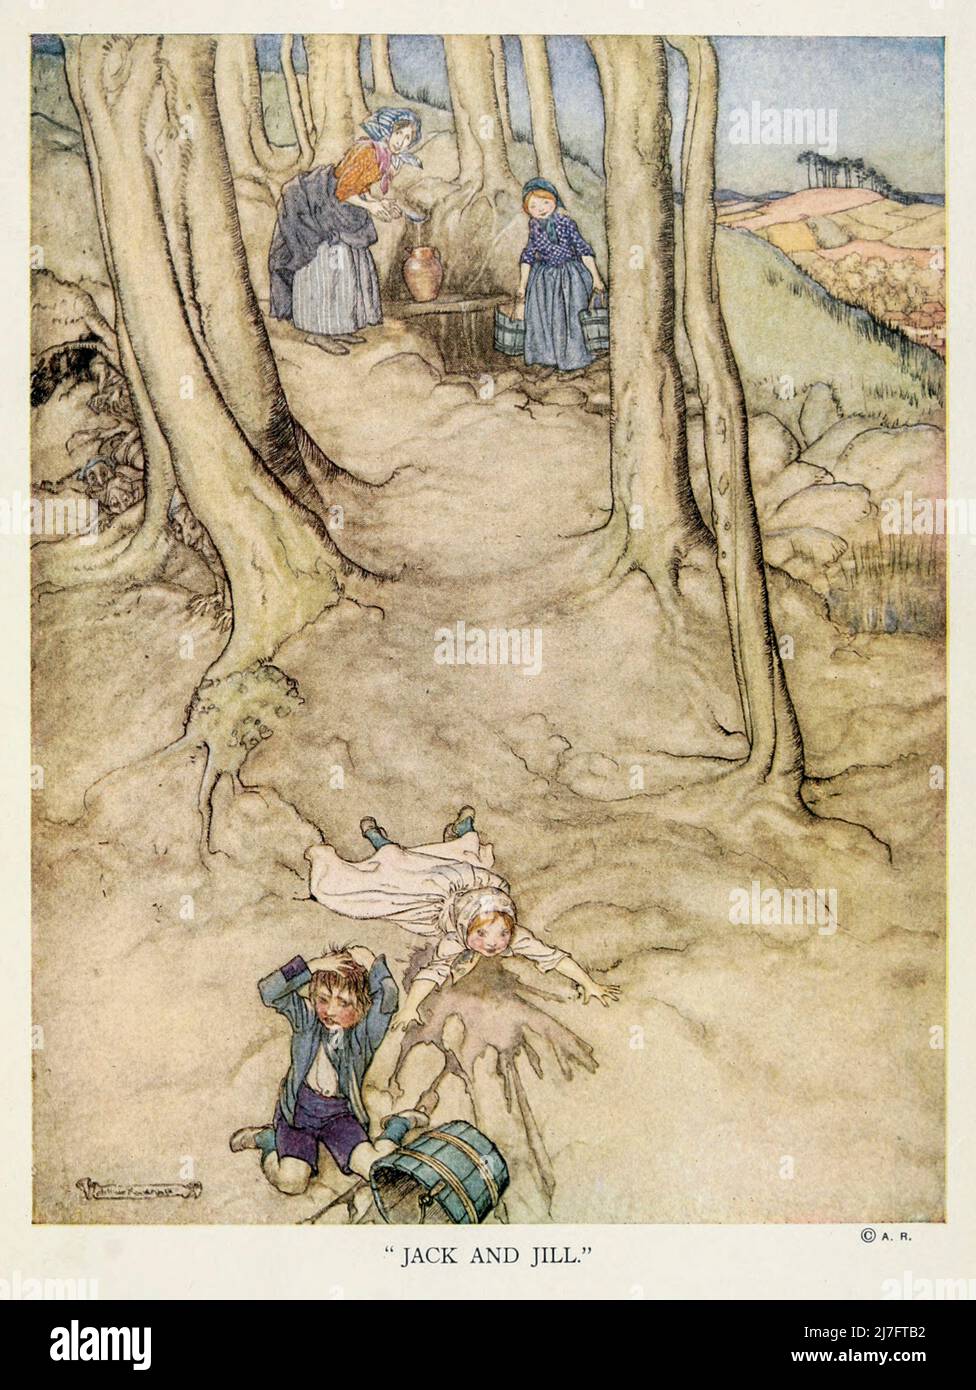 Jack et Jill monta la colline, pour aller chercher un seau d'eau; Jack tomba, et brisa sa couronne, et Jill tomba après de ' mère Goose l'ancienne comptine rhymes ' illustré par Arthur Rackham, publié en 1913 Banque D'Images